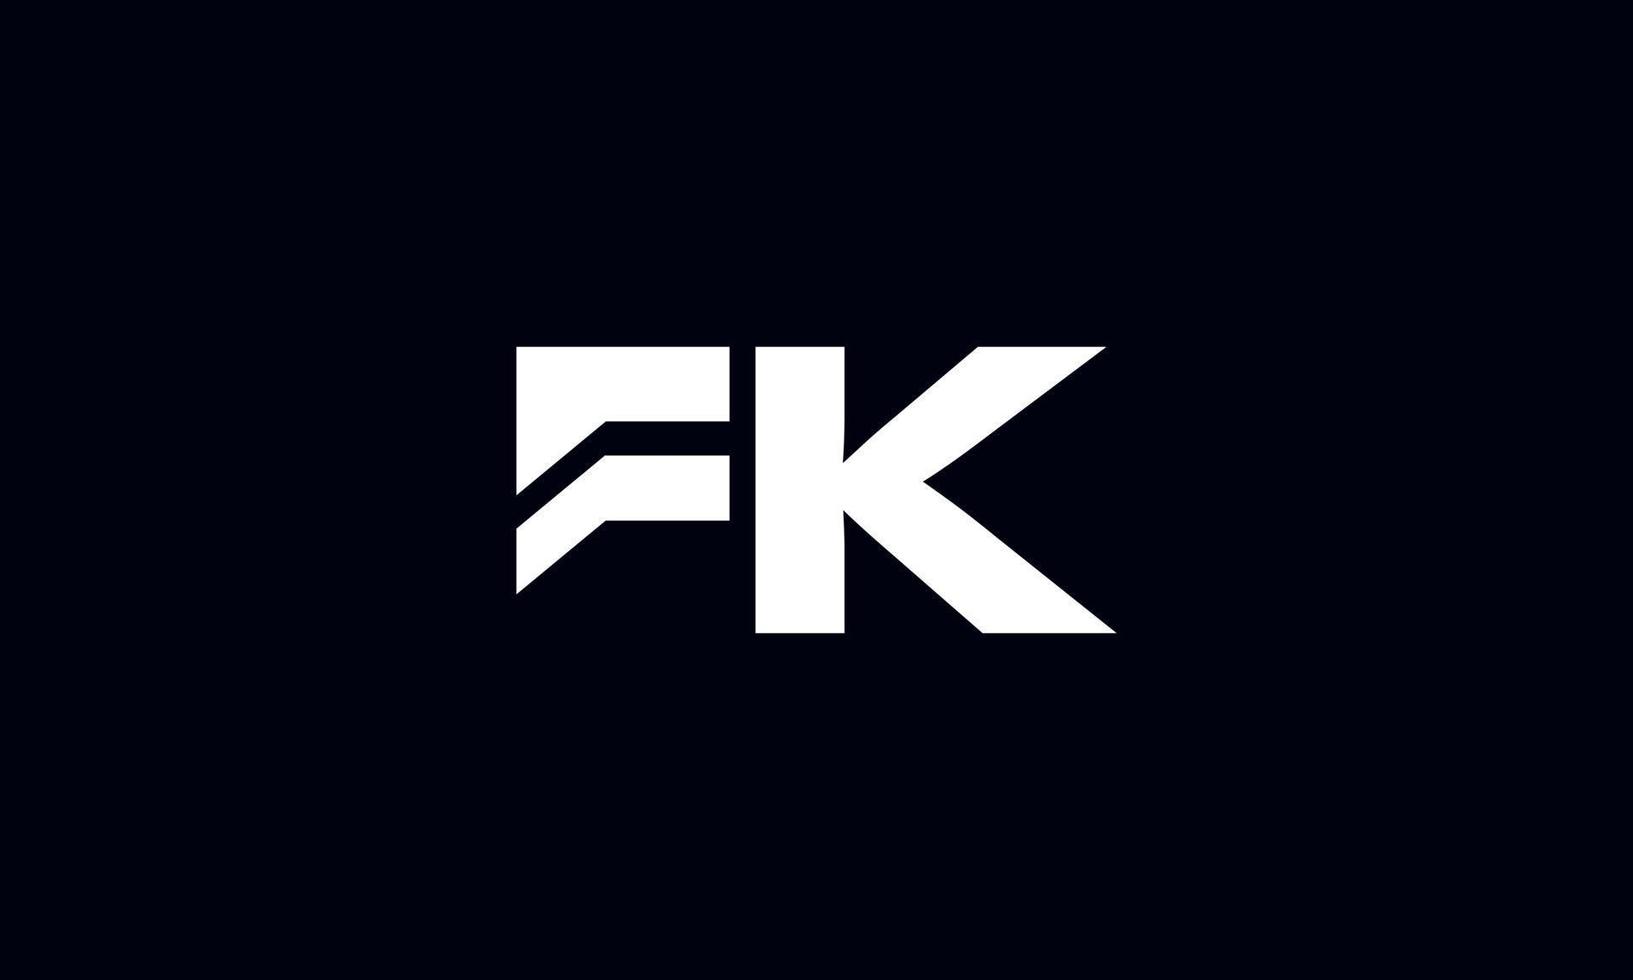 diseño de logotipo fk. diseño de logotipo de letra fk inicial monograma vector diseño pro vector.